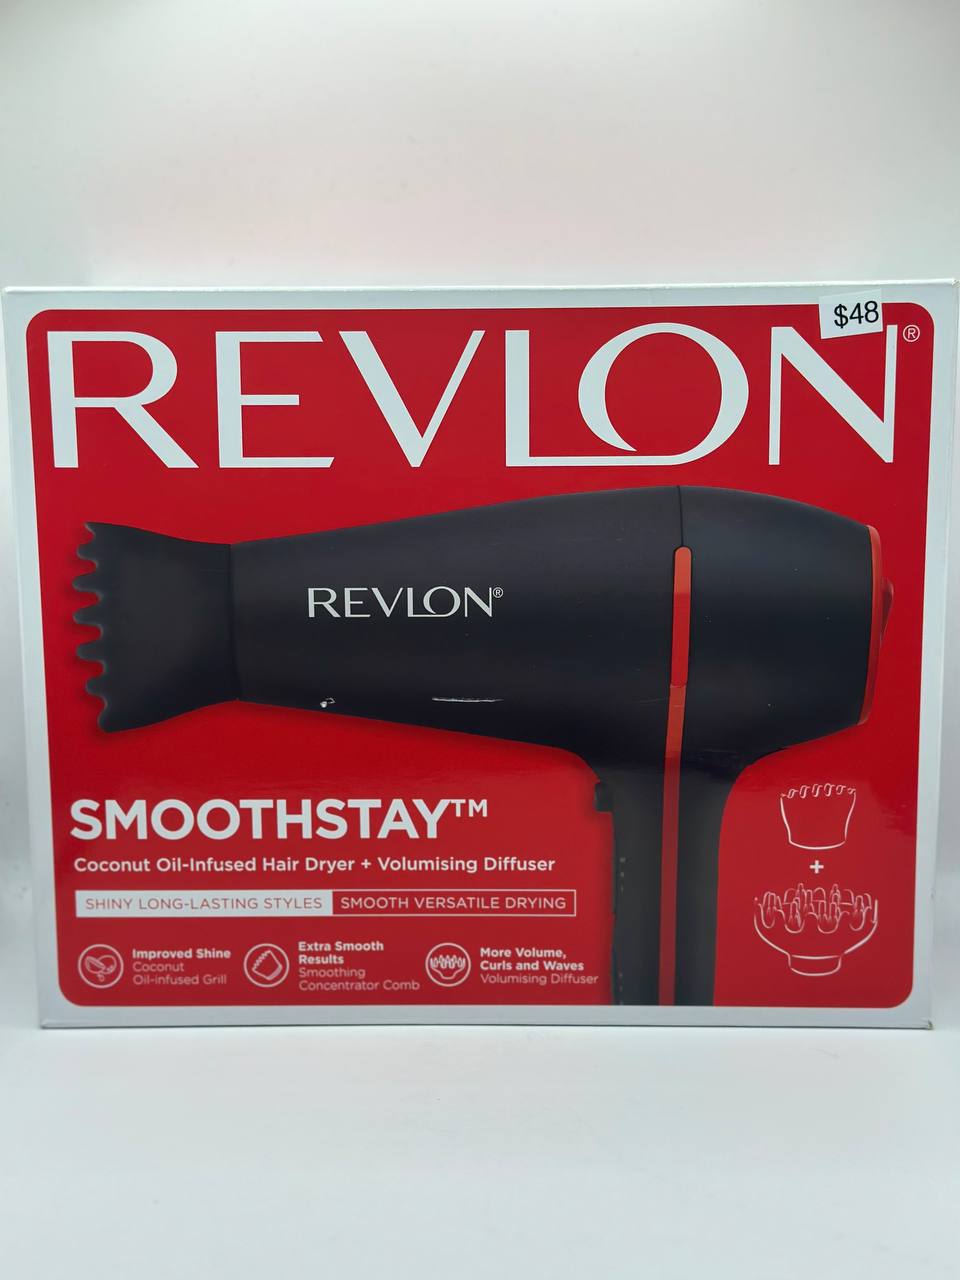 Revlon hair dryers